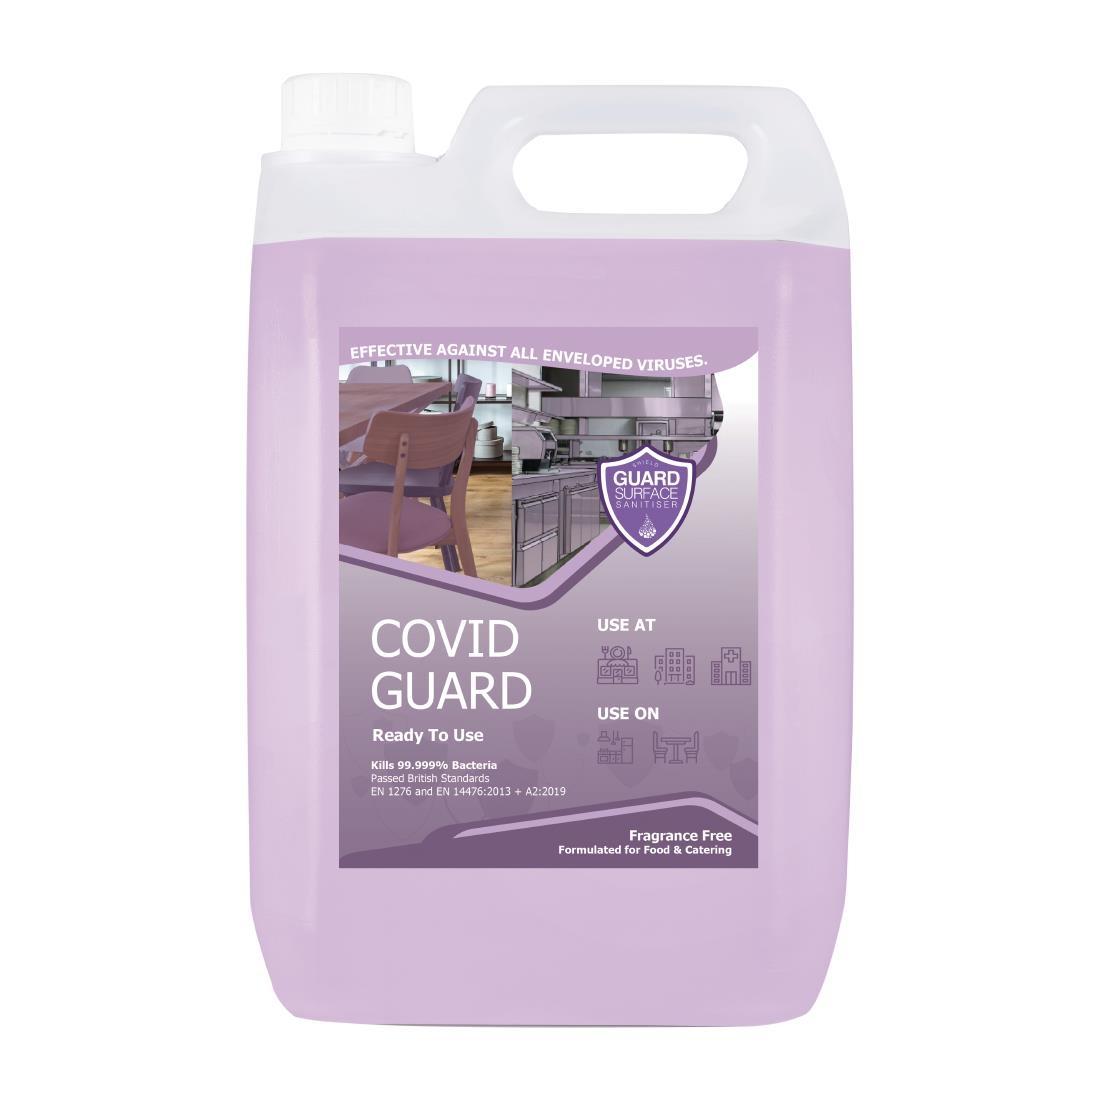 Covid Guard Virucidal Fragrance Free Sanitiser 2 x 5Ltr - FR182  - 1